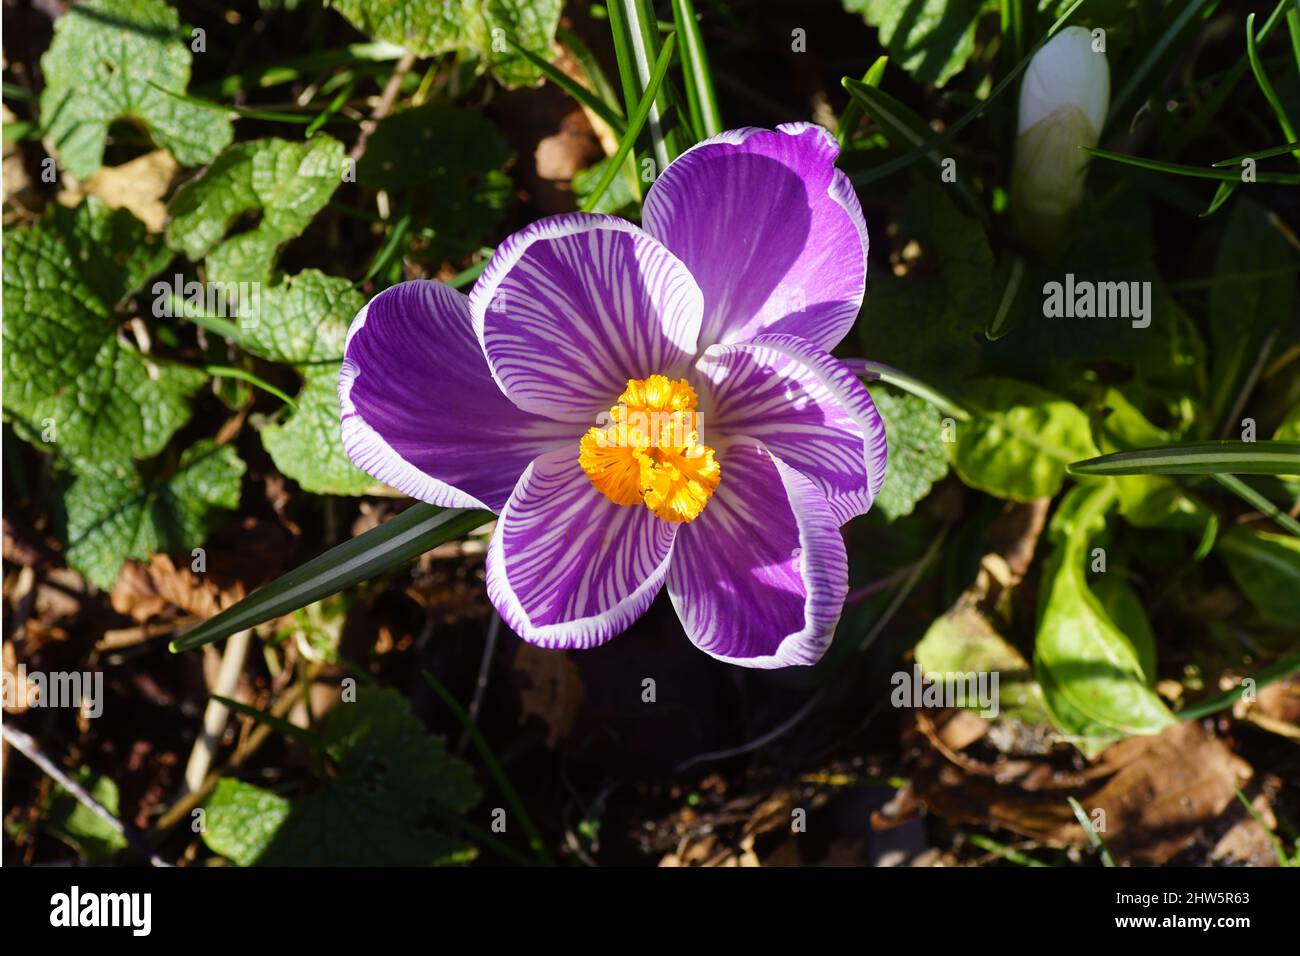 Primer plano de un crocus de flores blancas y púrpura con pistil naranja amarillo. En el sol entre las hojas del htrrm del witheredsmf en un jardín holandés. Foto de stock